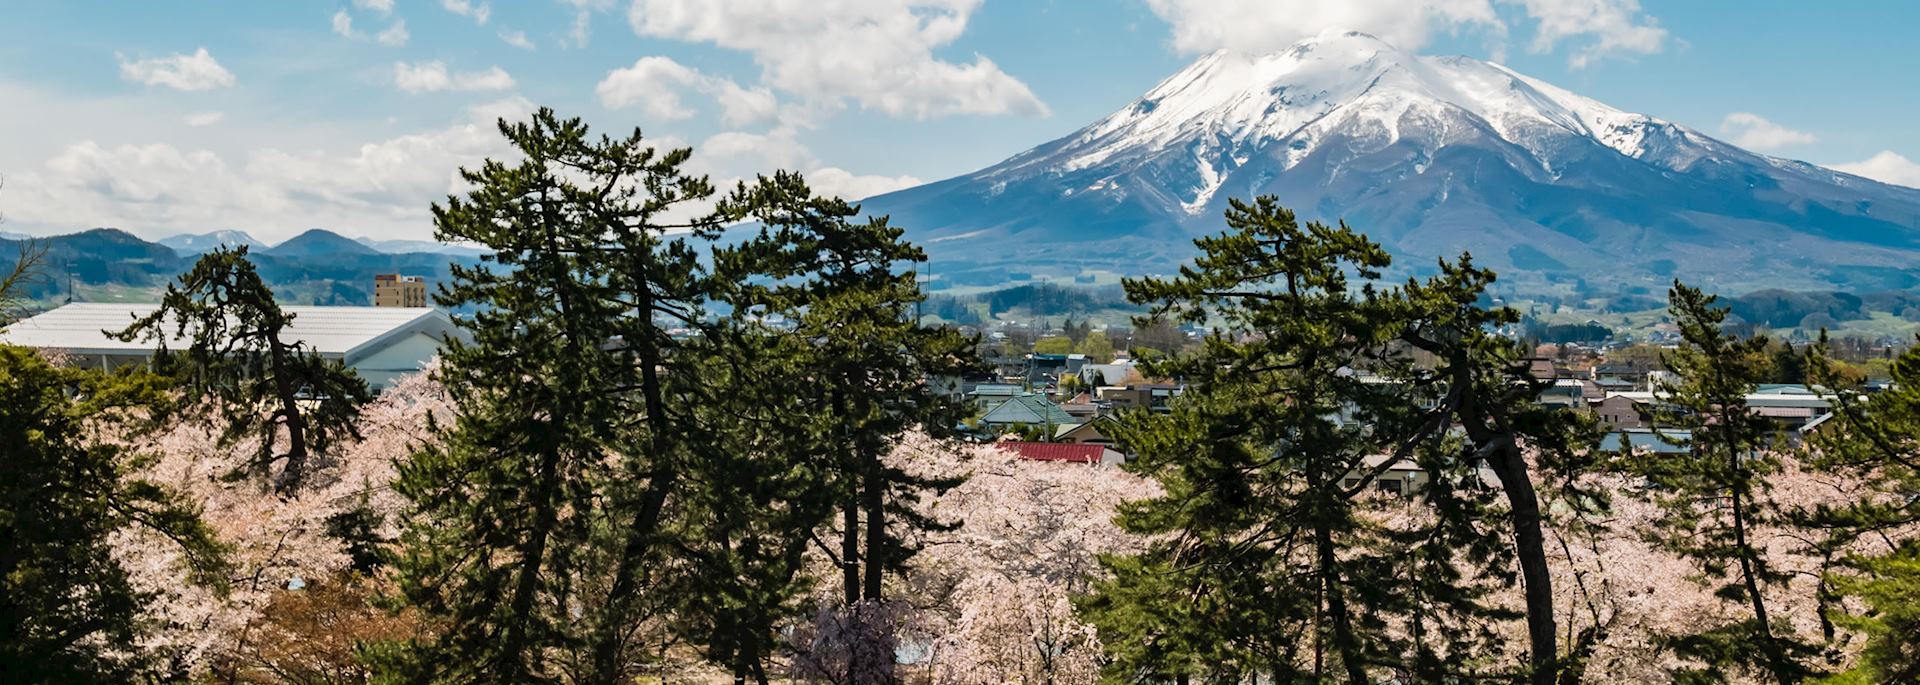 Mount Iwaki, Tohoku